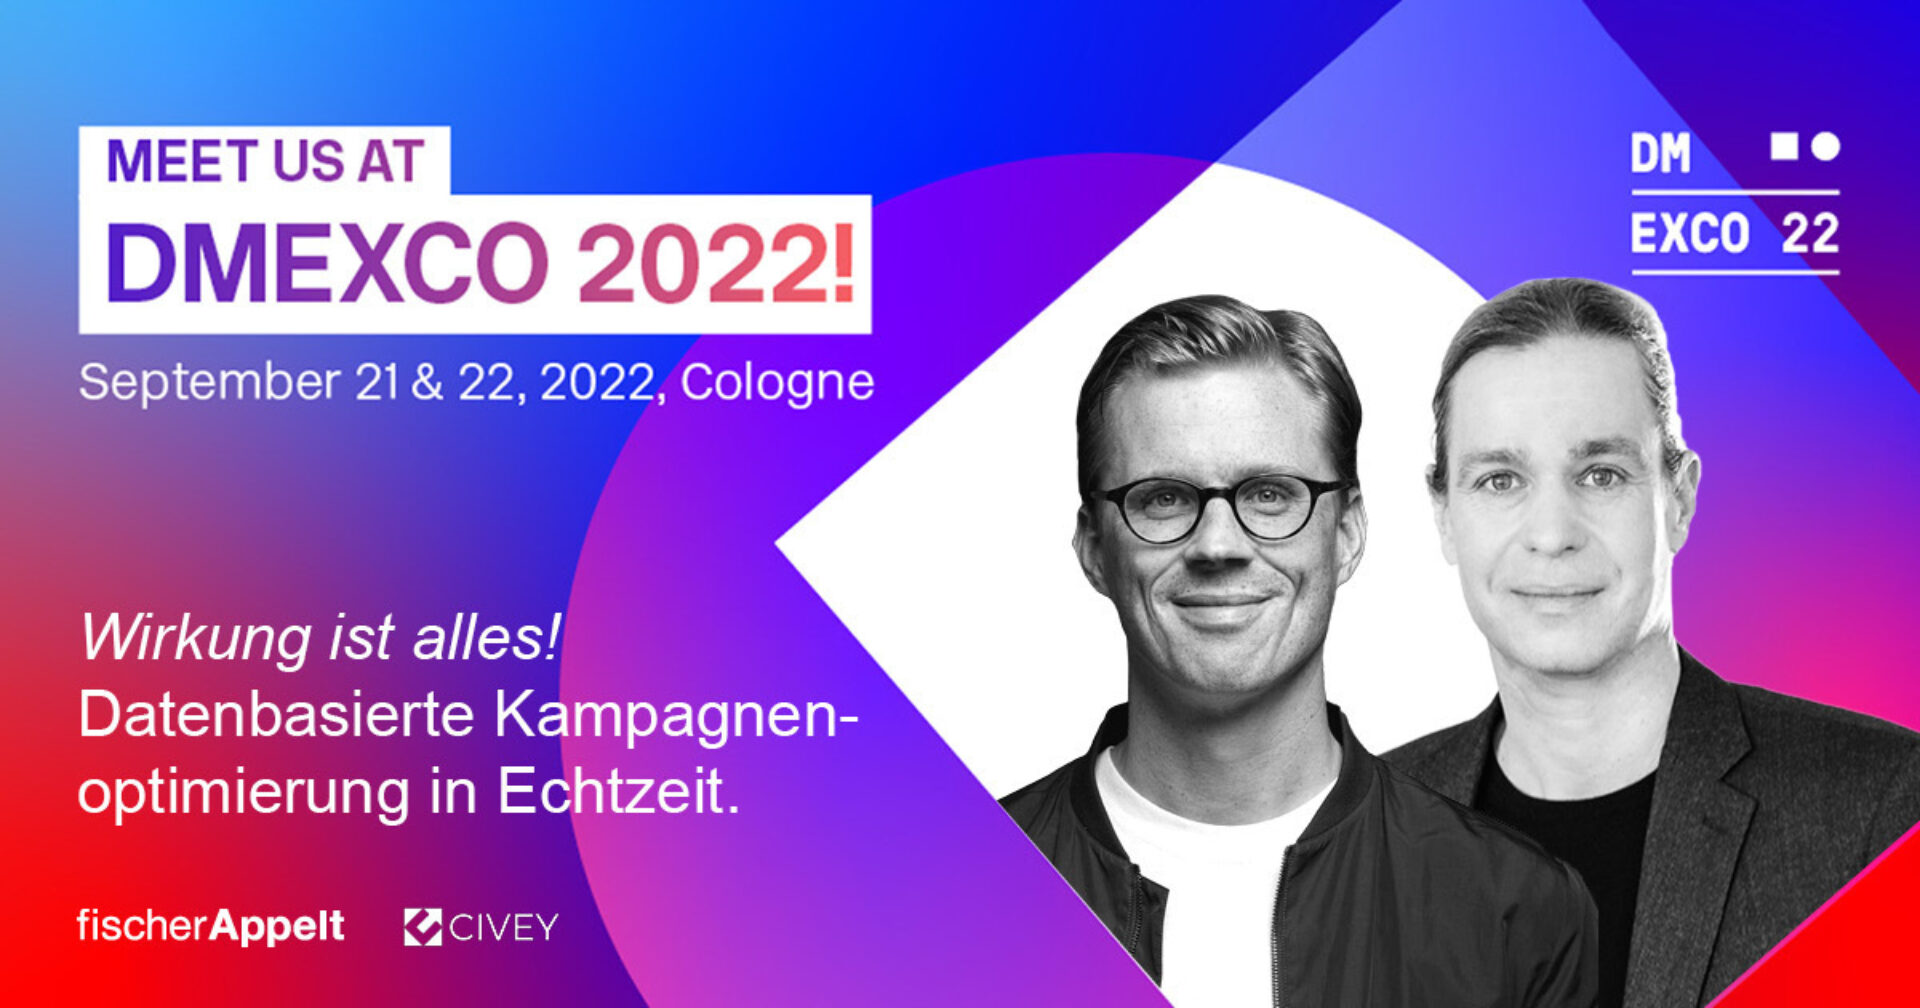 fischerAppelt - Meet us at DMEXCO 2022